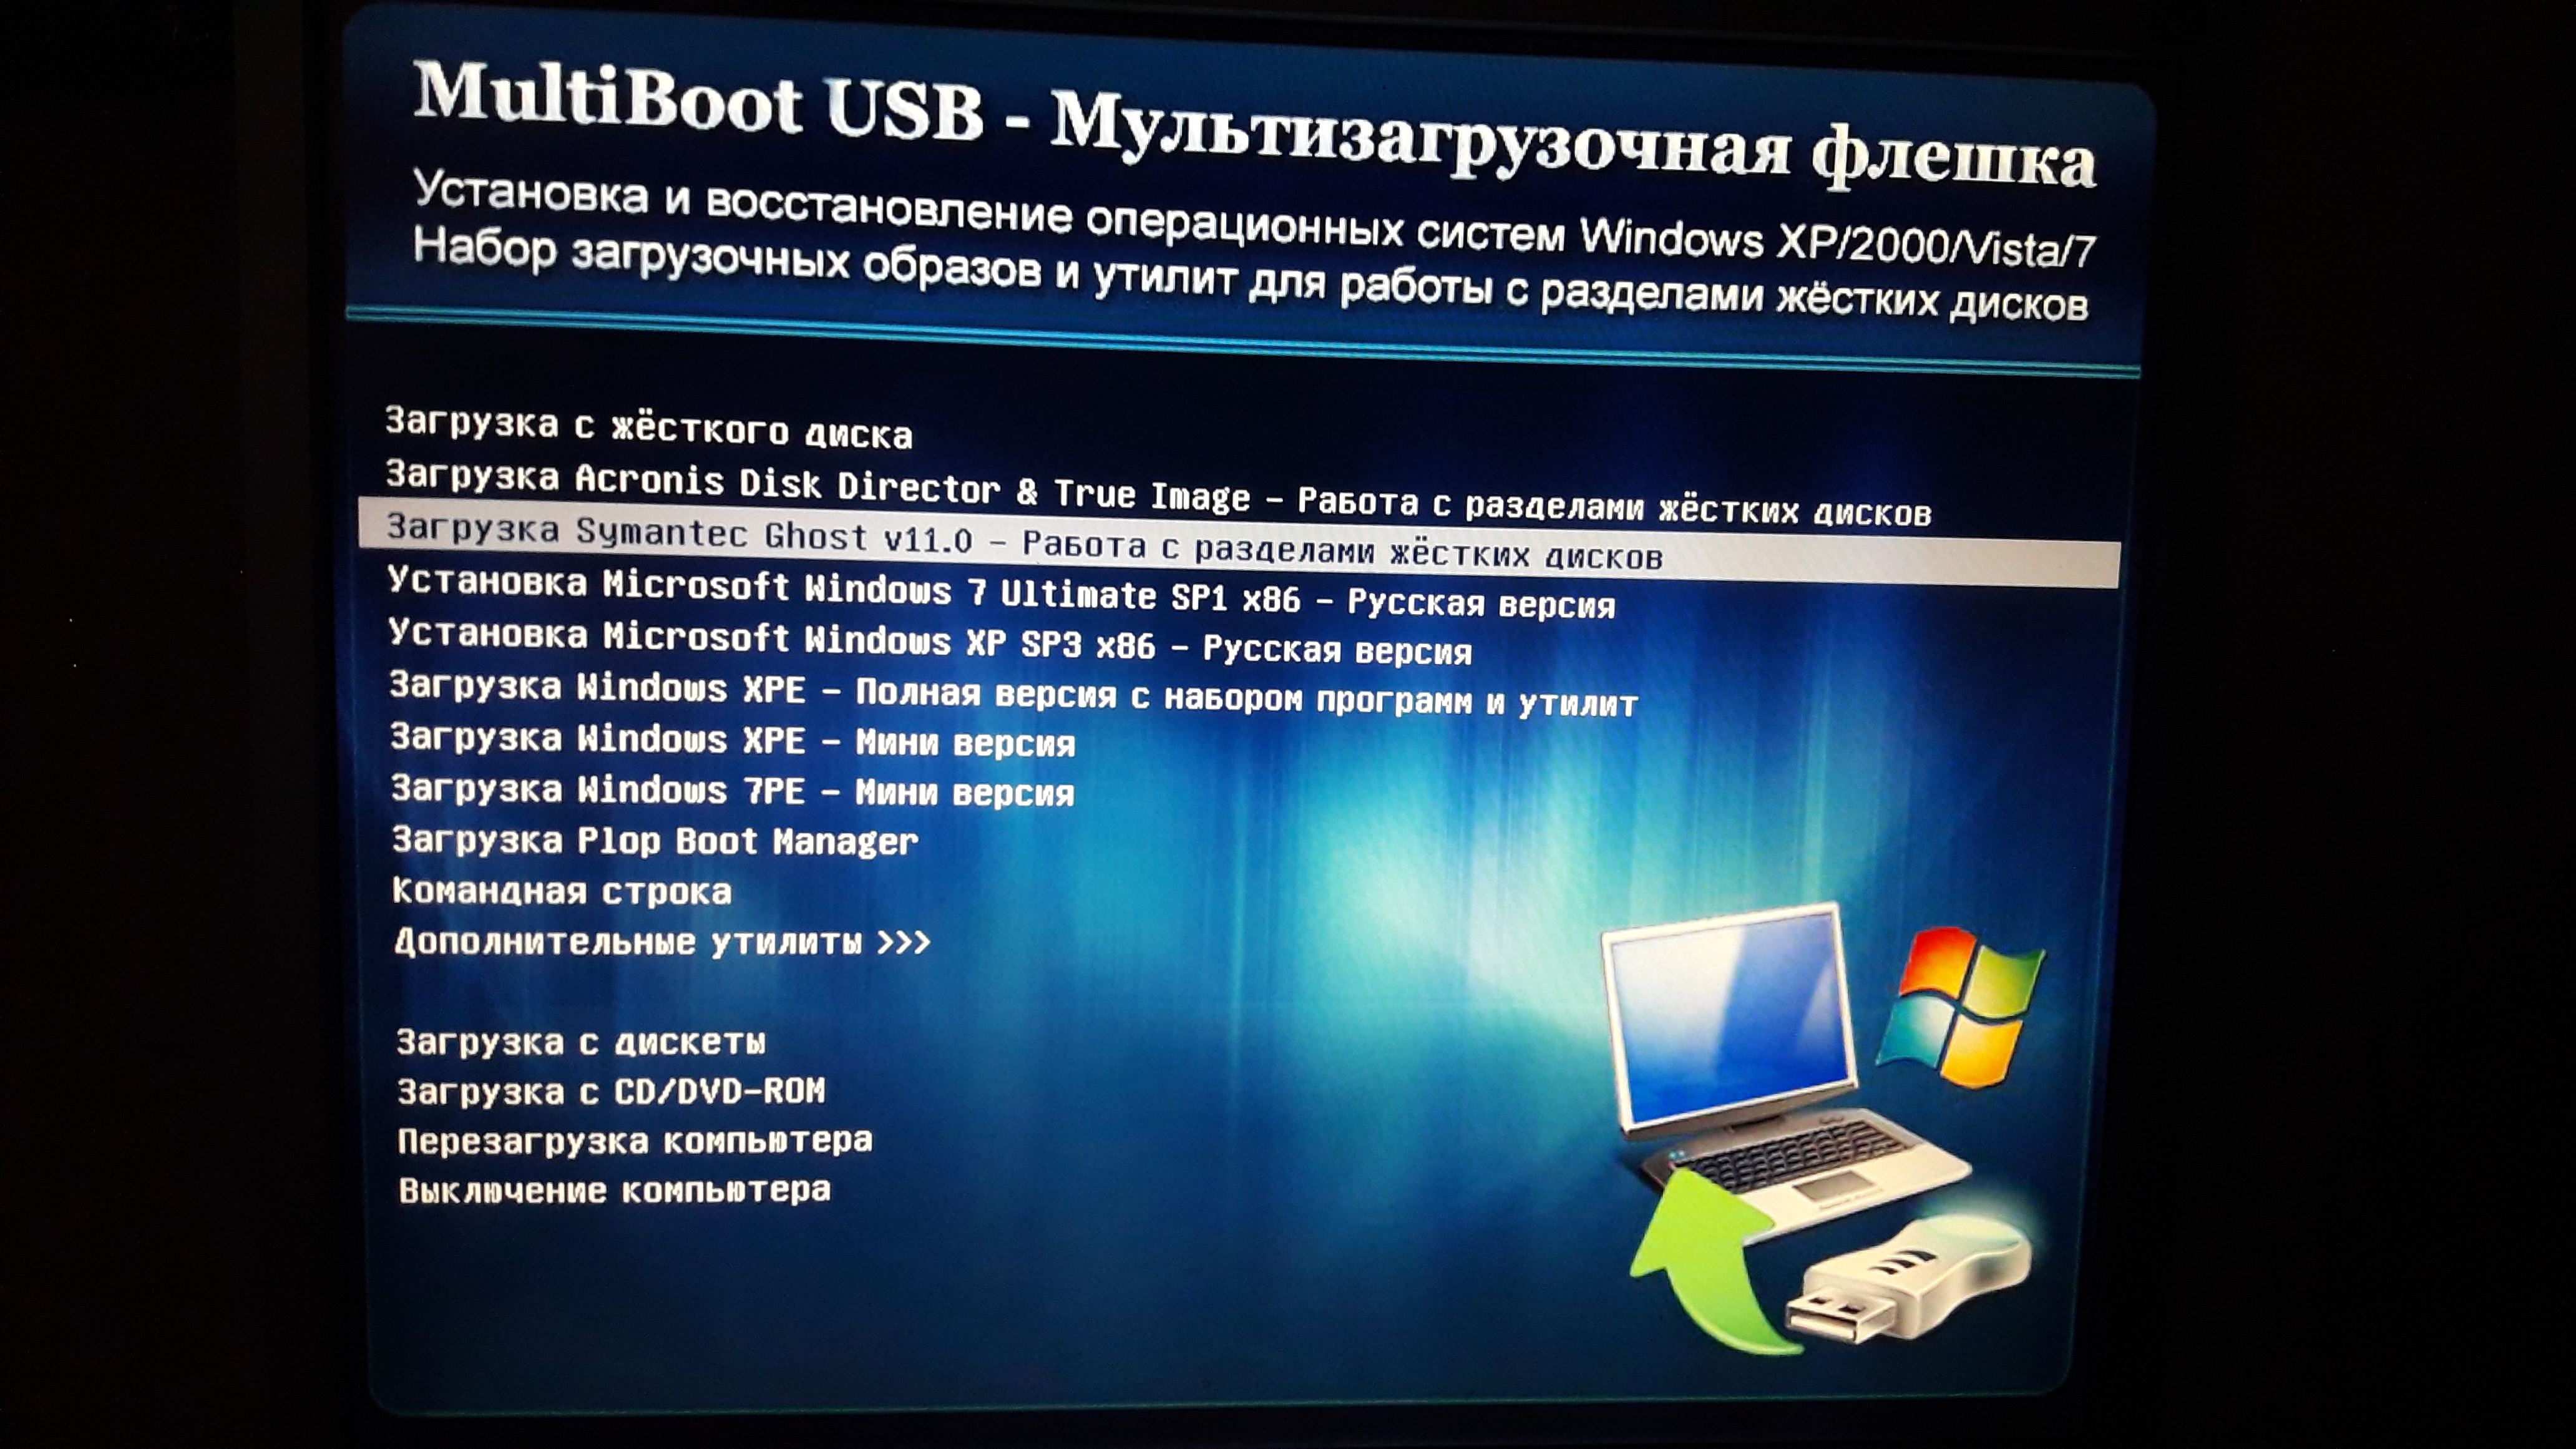 Создание загрузочной флешки в бесплатной программе WinSetupFromUSB для установки операционной системы Windows на компьютер